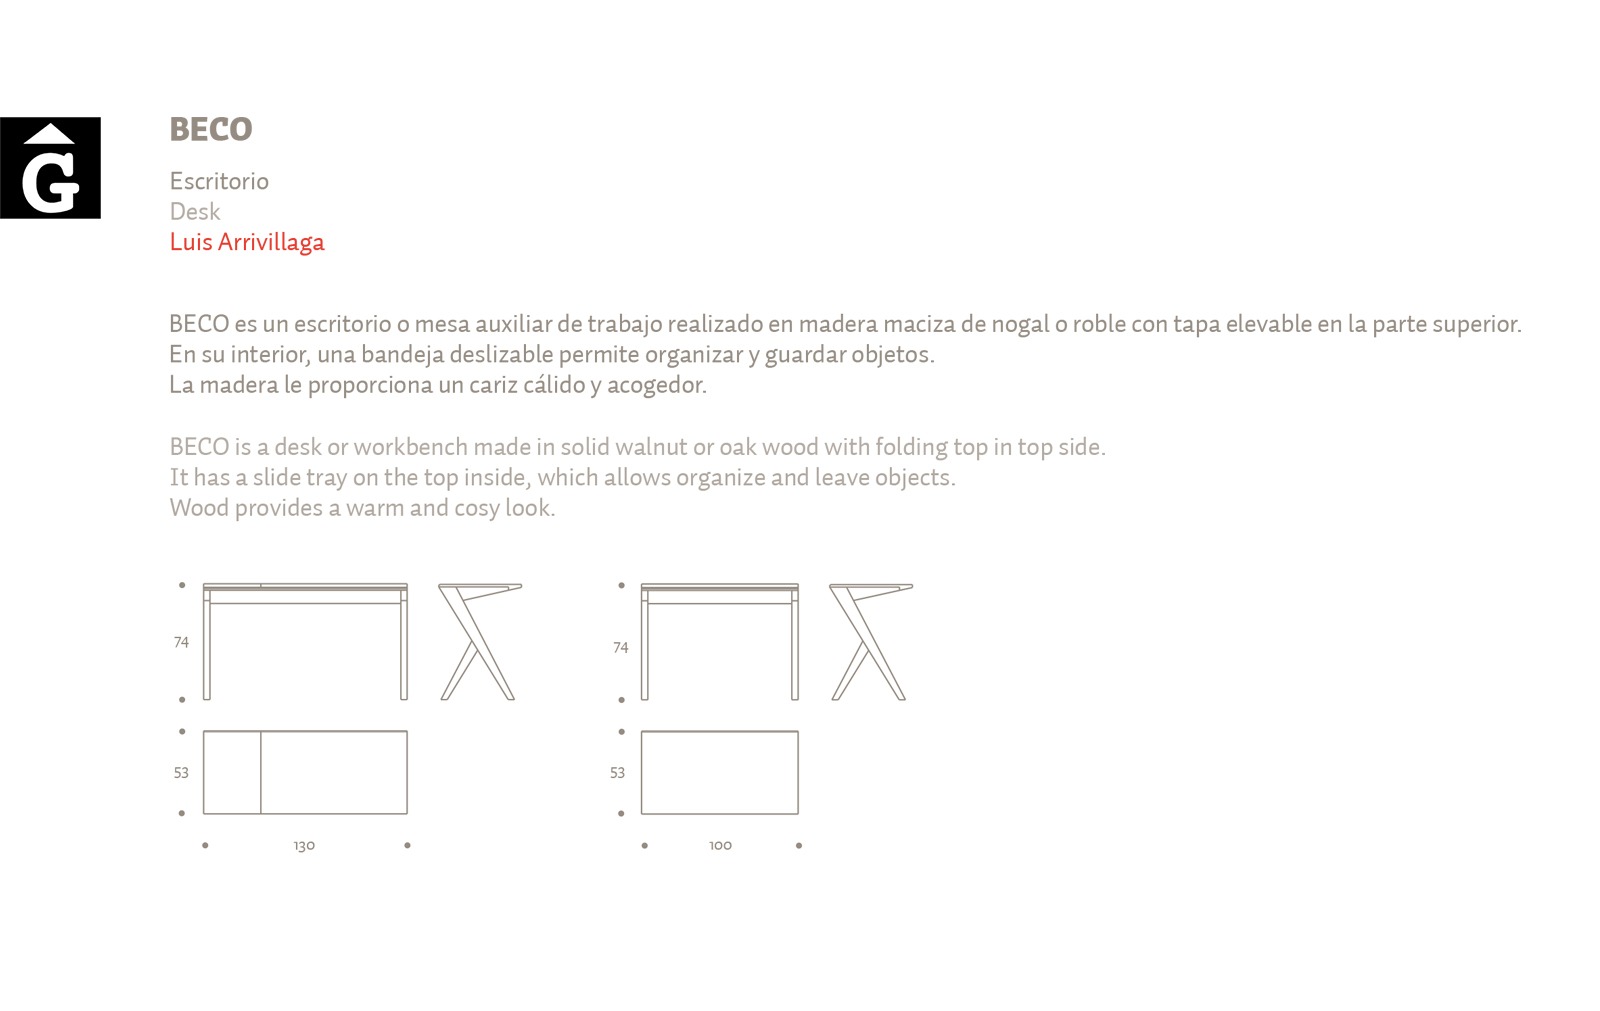 4-2-kendo-mobiliario-per-mobles-gifreu-peces-singulars-de-molta-qualitat-modern-minimal-taules-escriptoris-aparadors